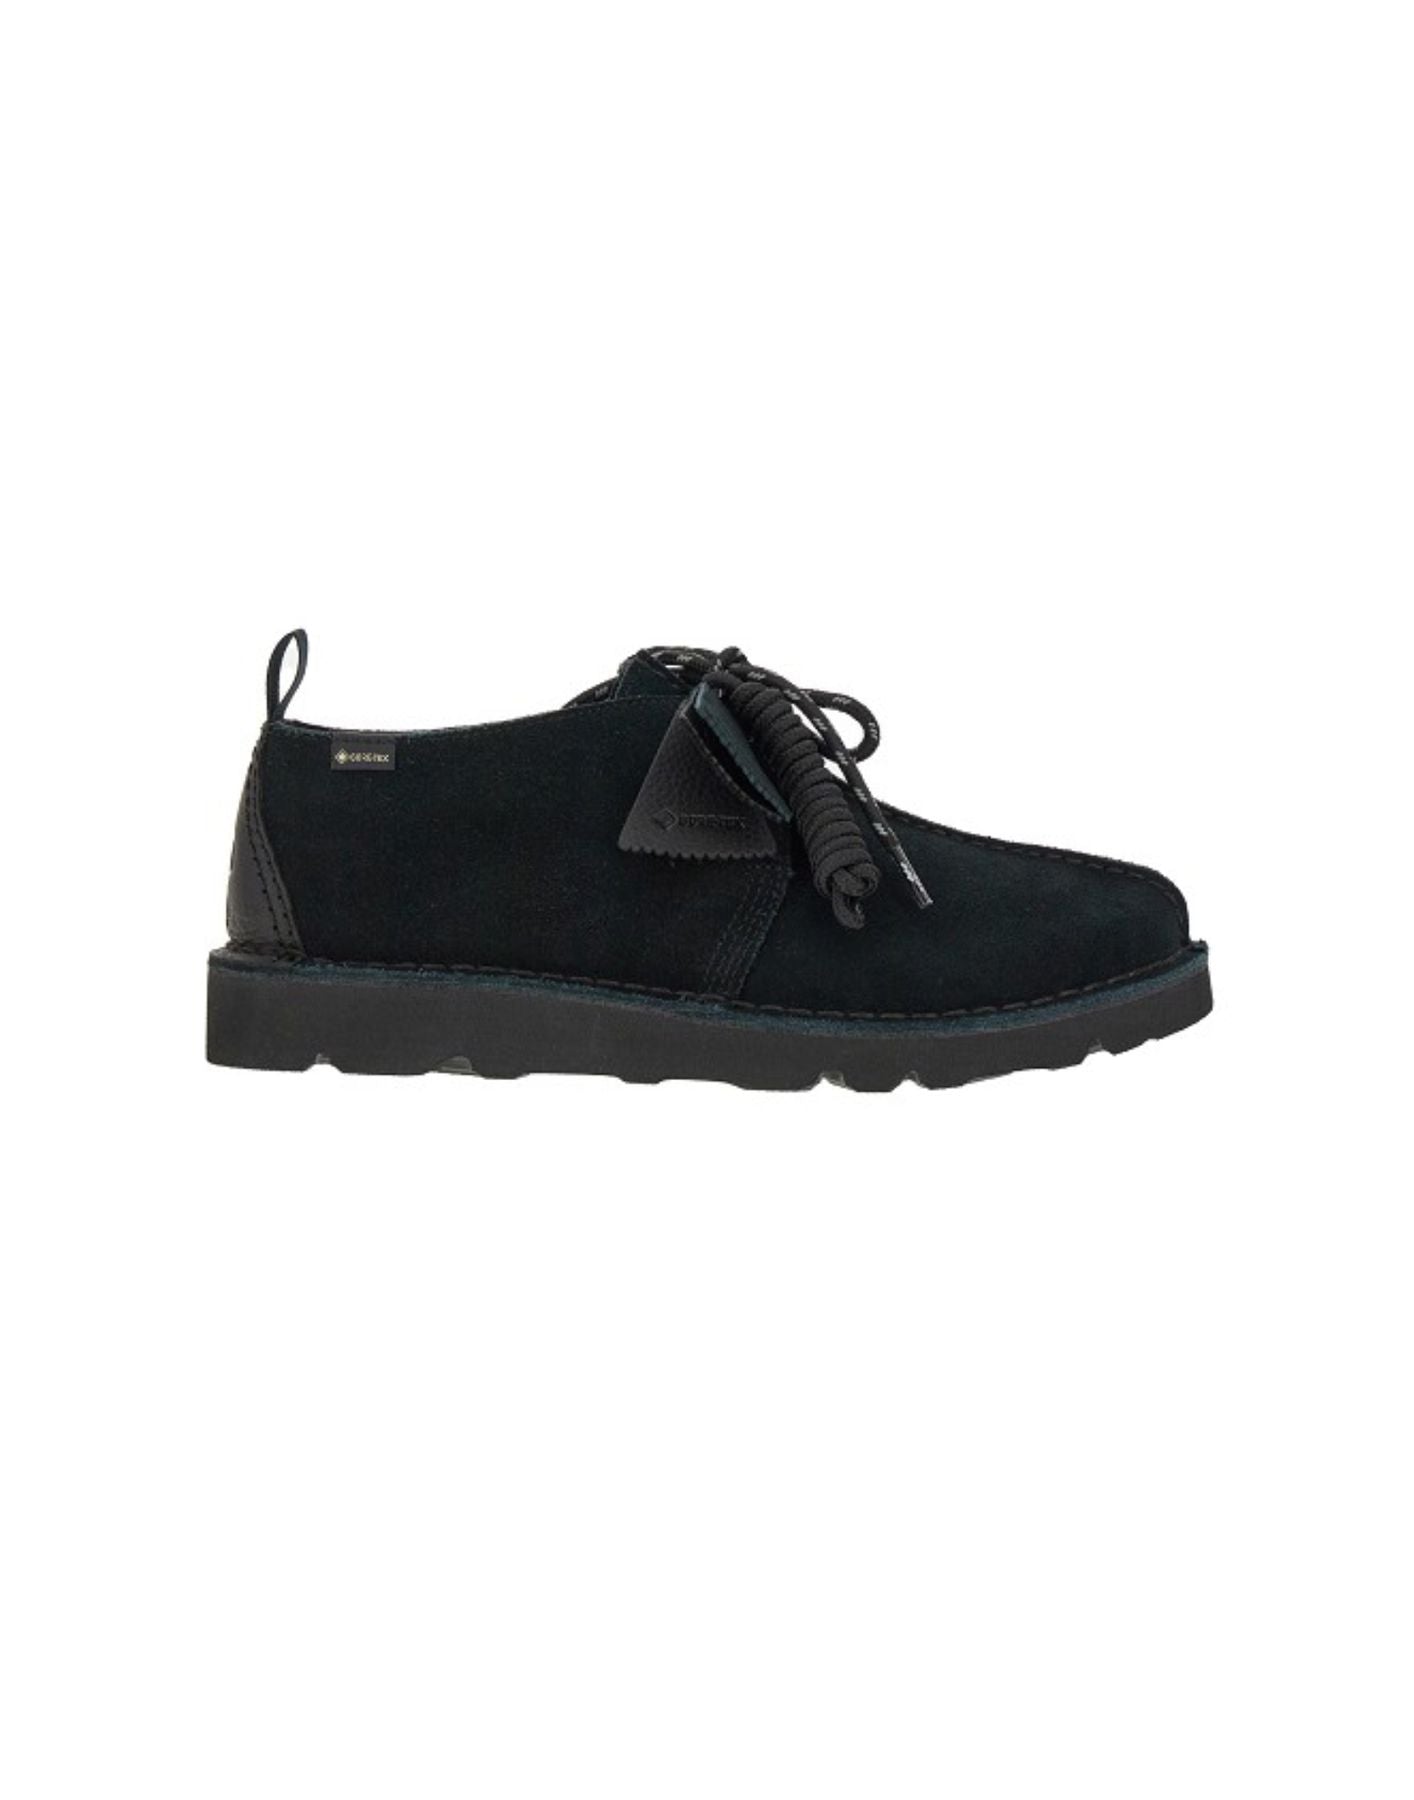 Shoes for man DESERT TREKGTX BLACK SDE Clarks Originals